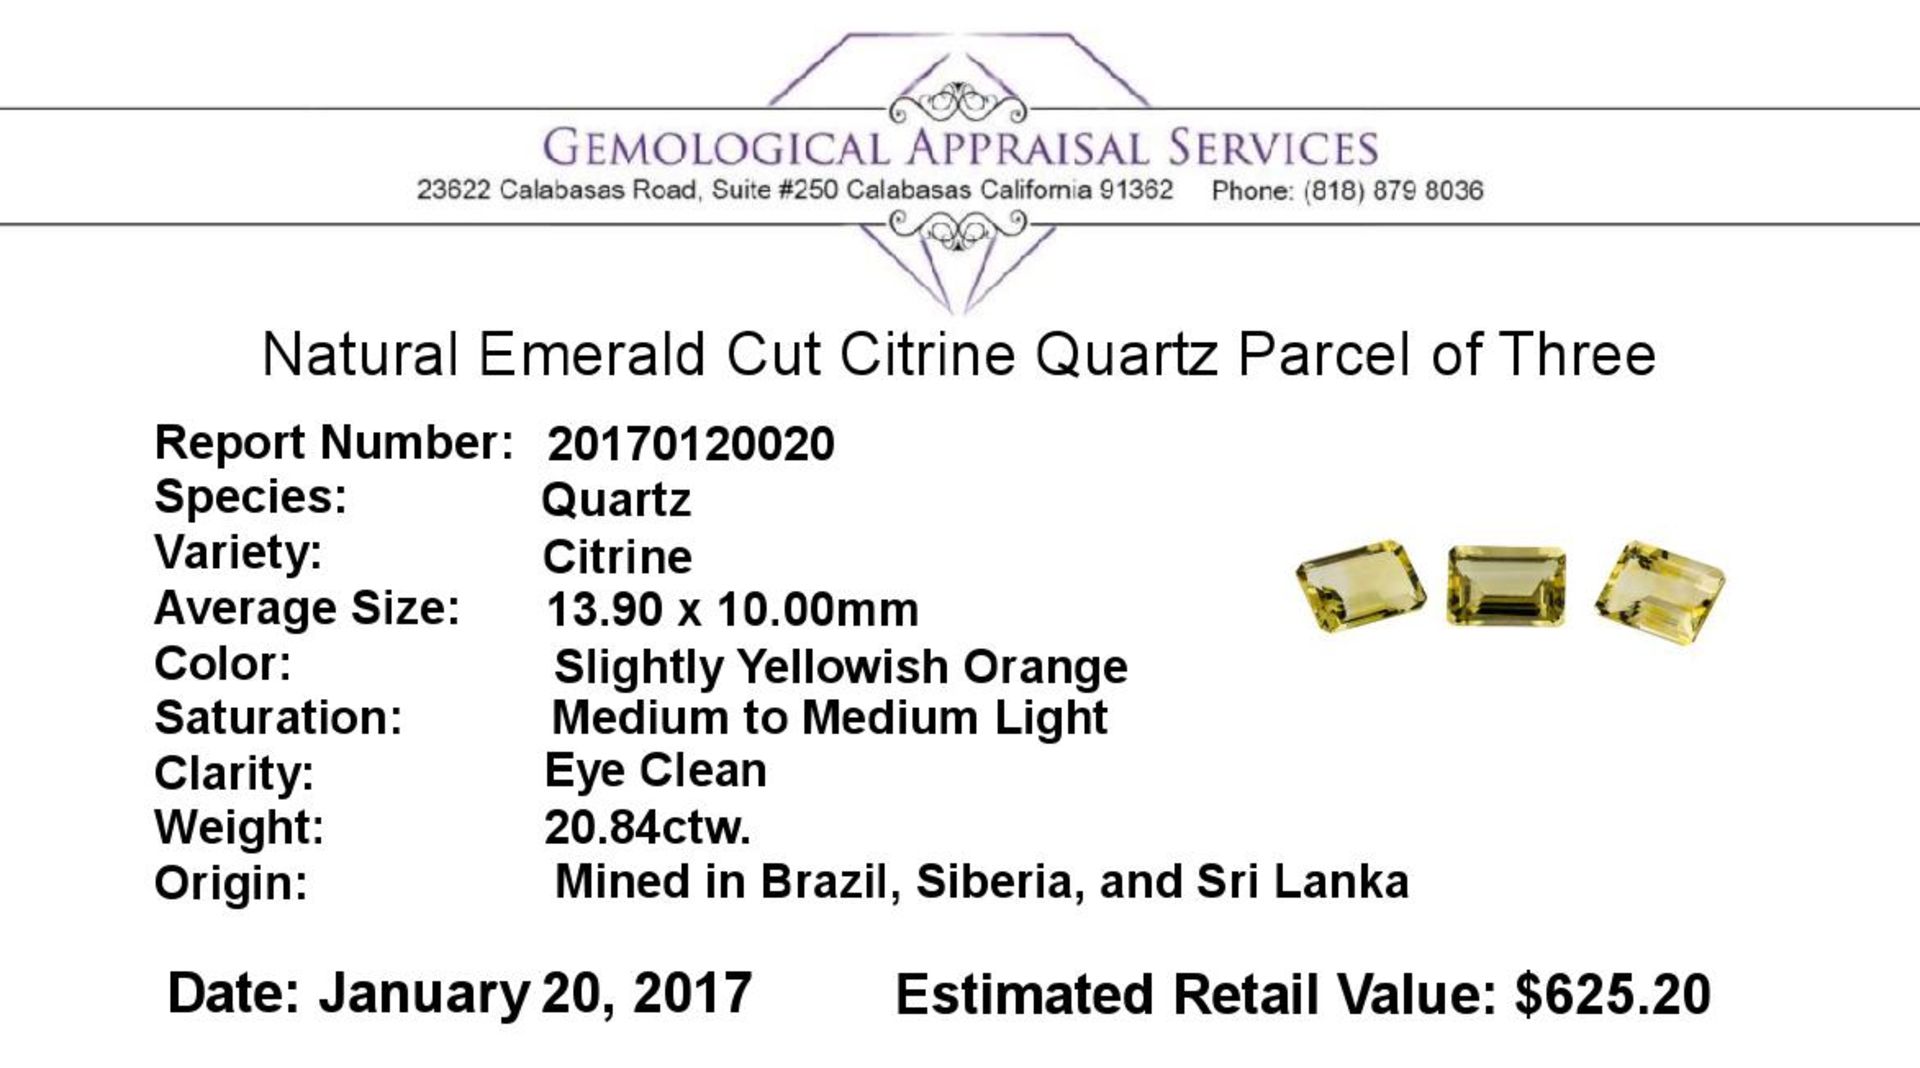 20.84ctw.Natural Emerald Cut Citrine Quartz Parcel of Three - Image 3 of 3